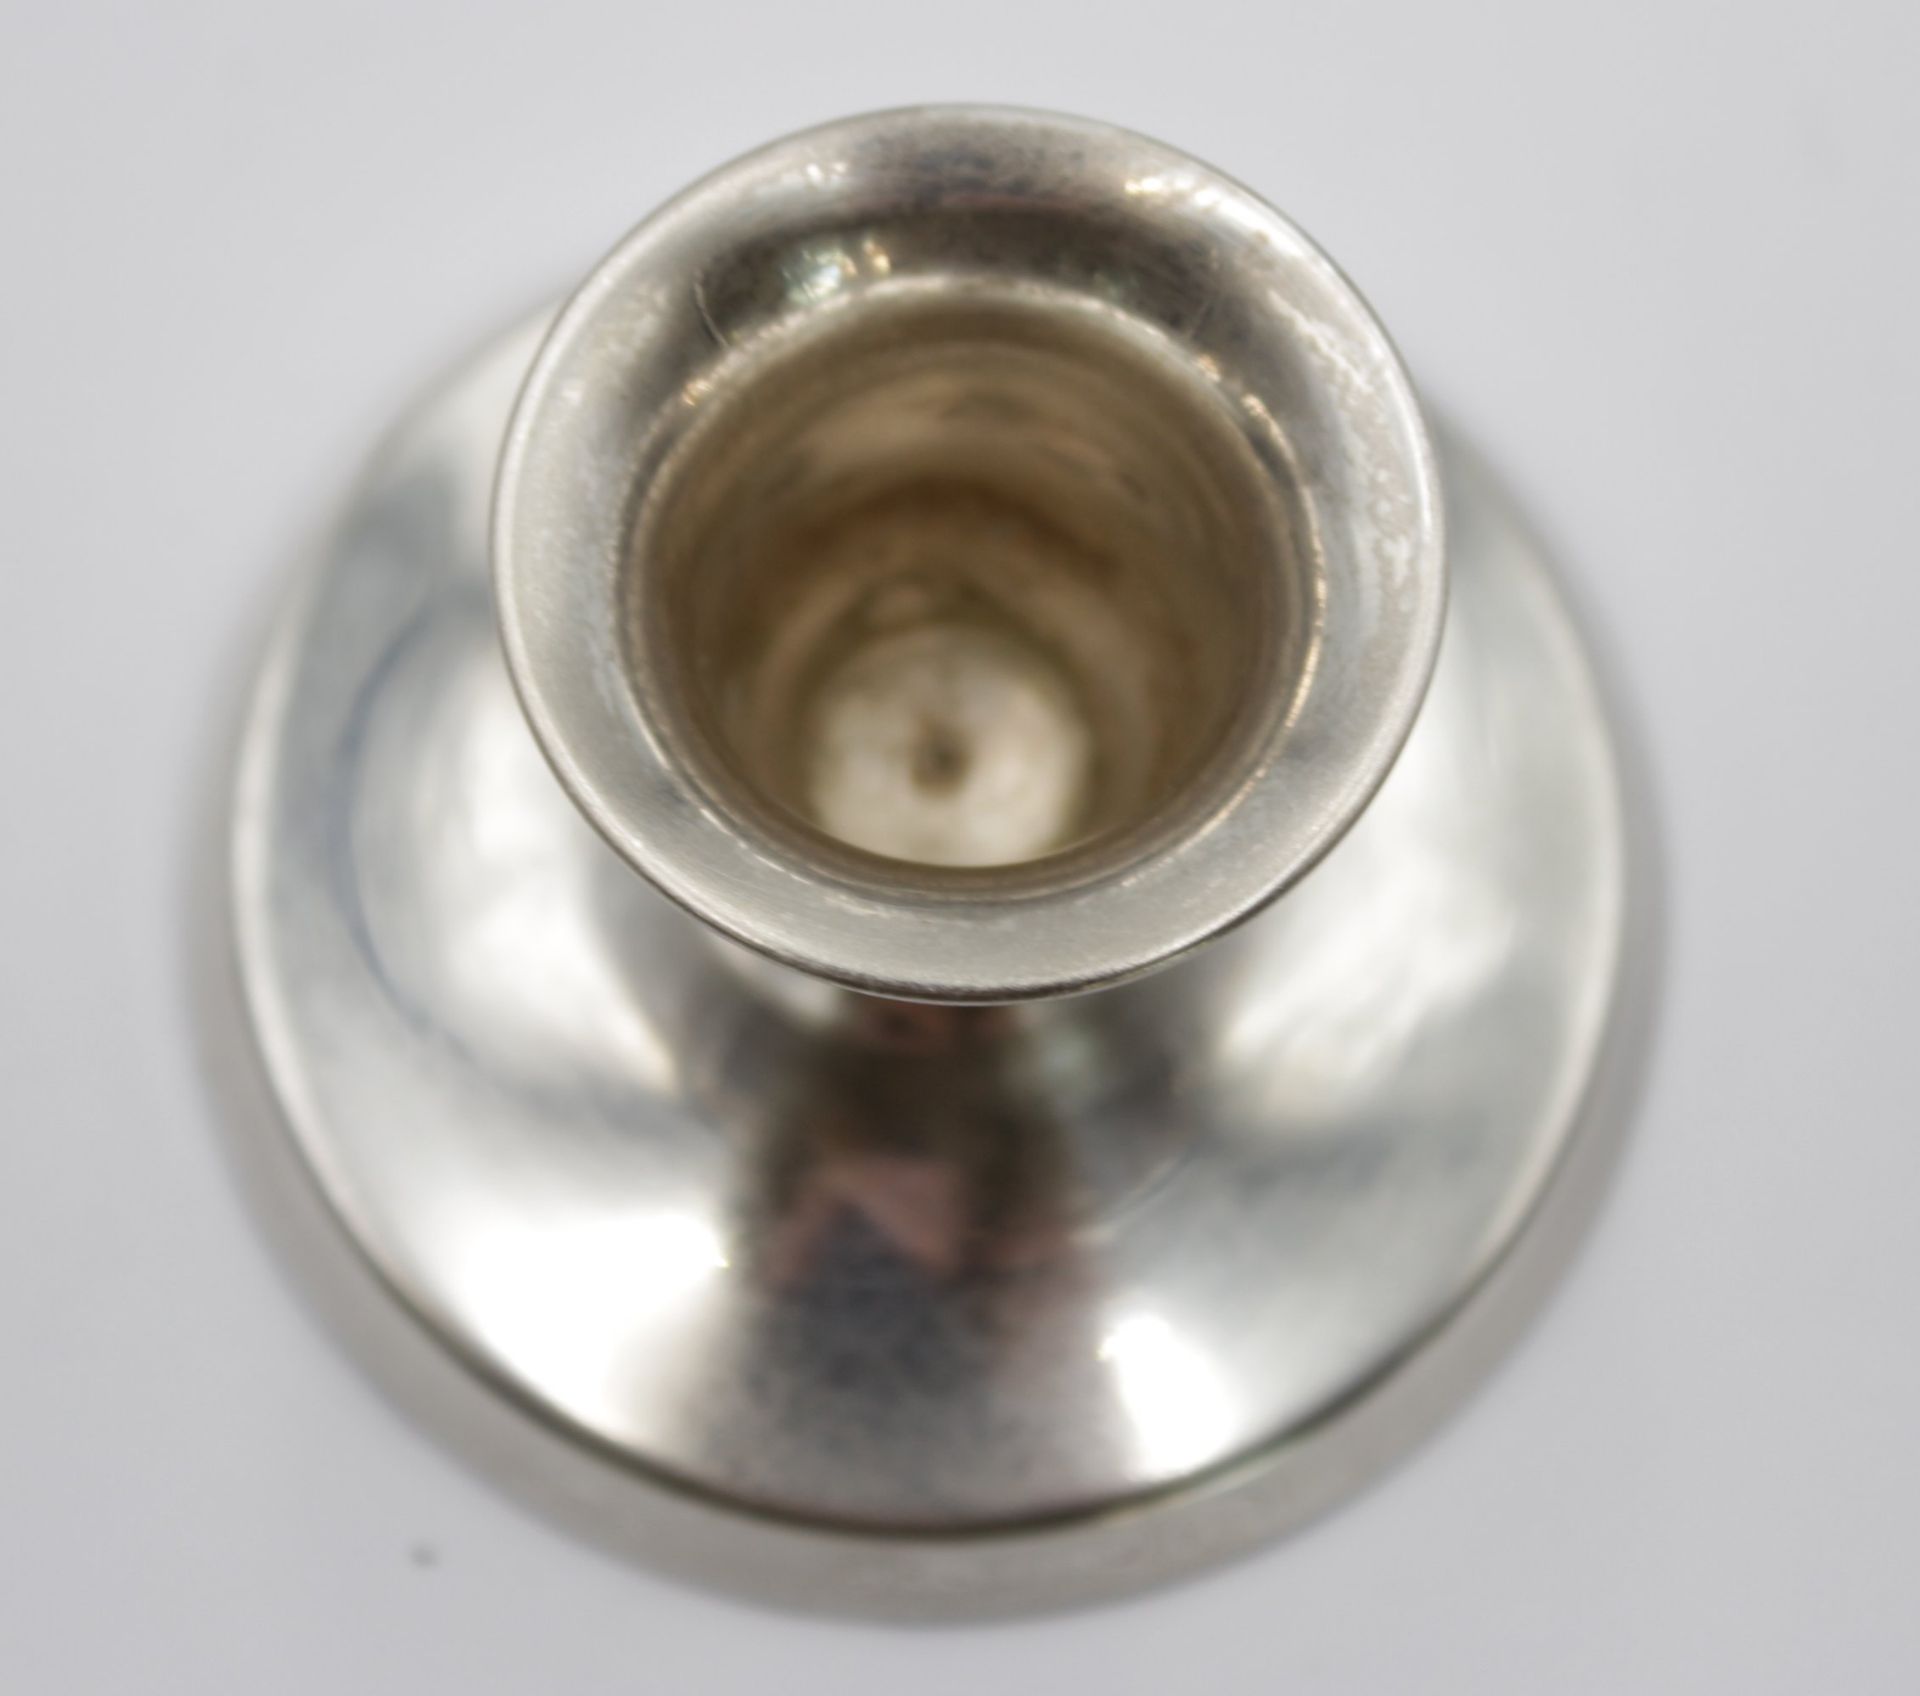 kl. Leuchter, 830er Silber, Richmond, gefüllter Stand, zus. 73gr., H-4,5cm. - Bild 2 aus 4